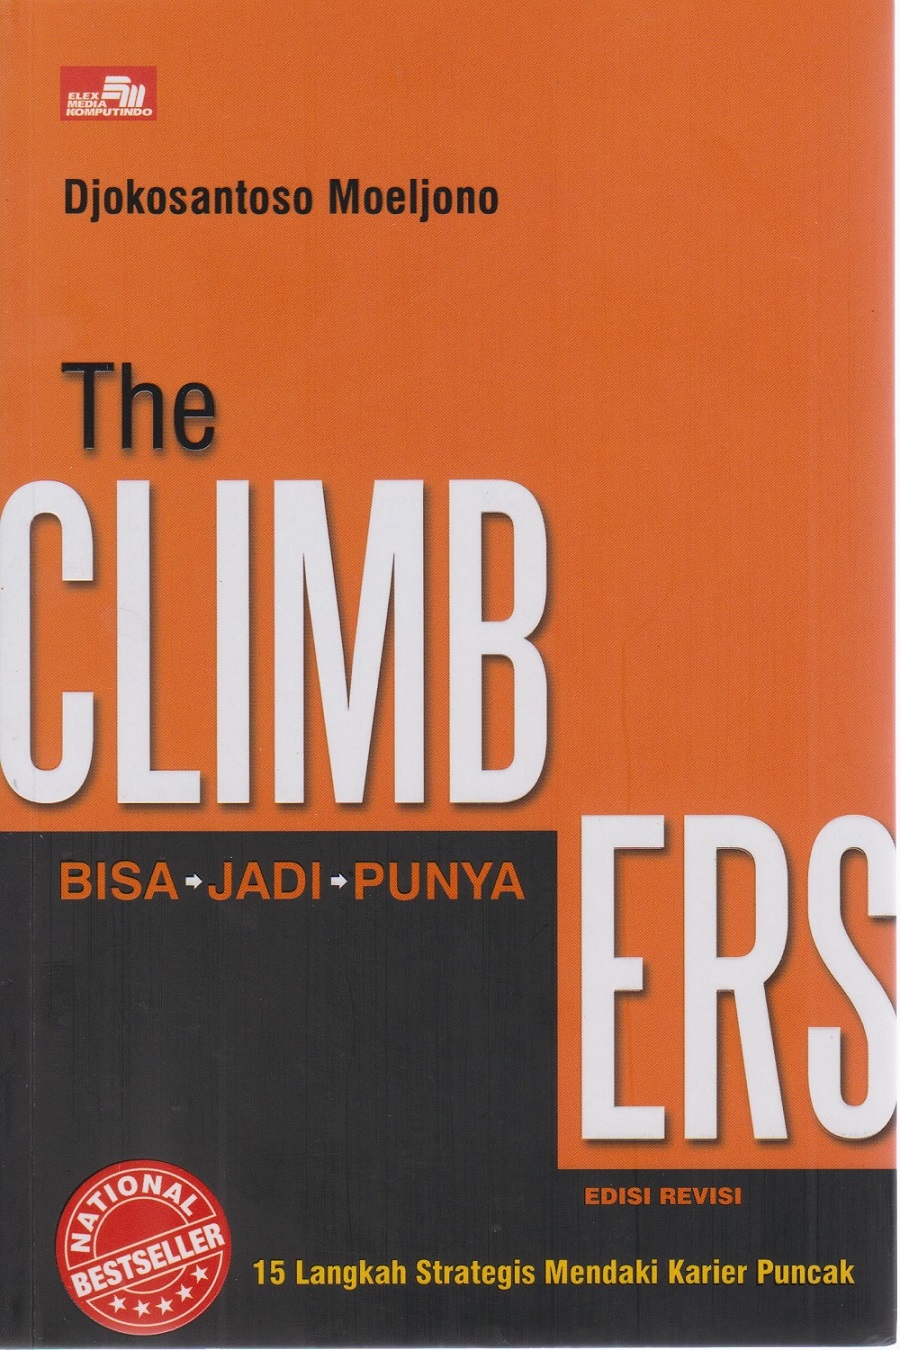 The climbers : bisa - jadi - punya = 15 langkah strategis mendaki karier puncak